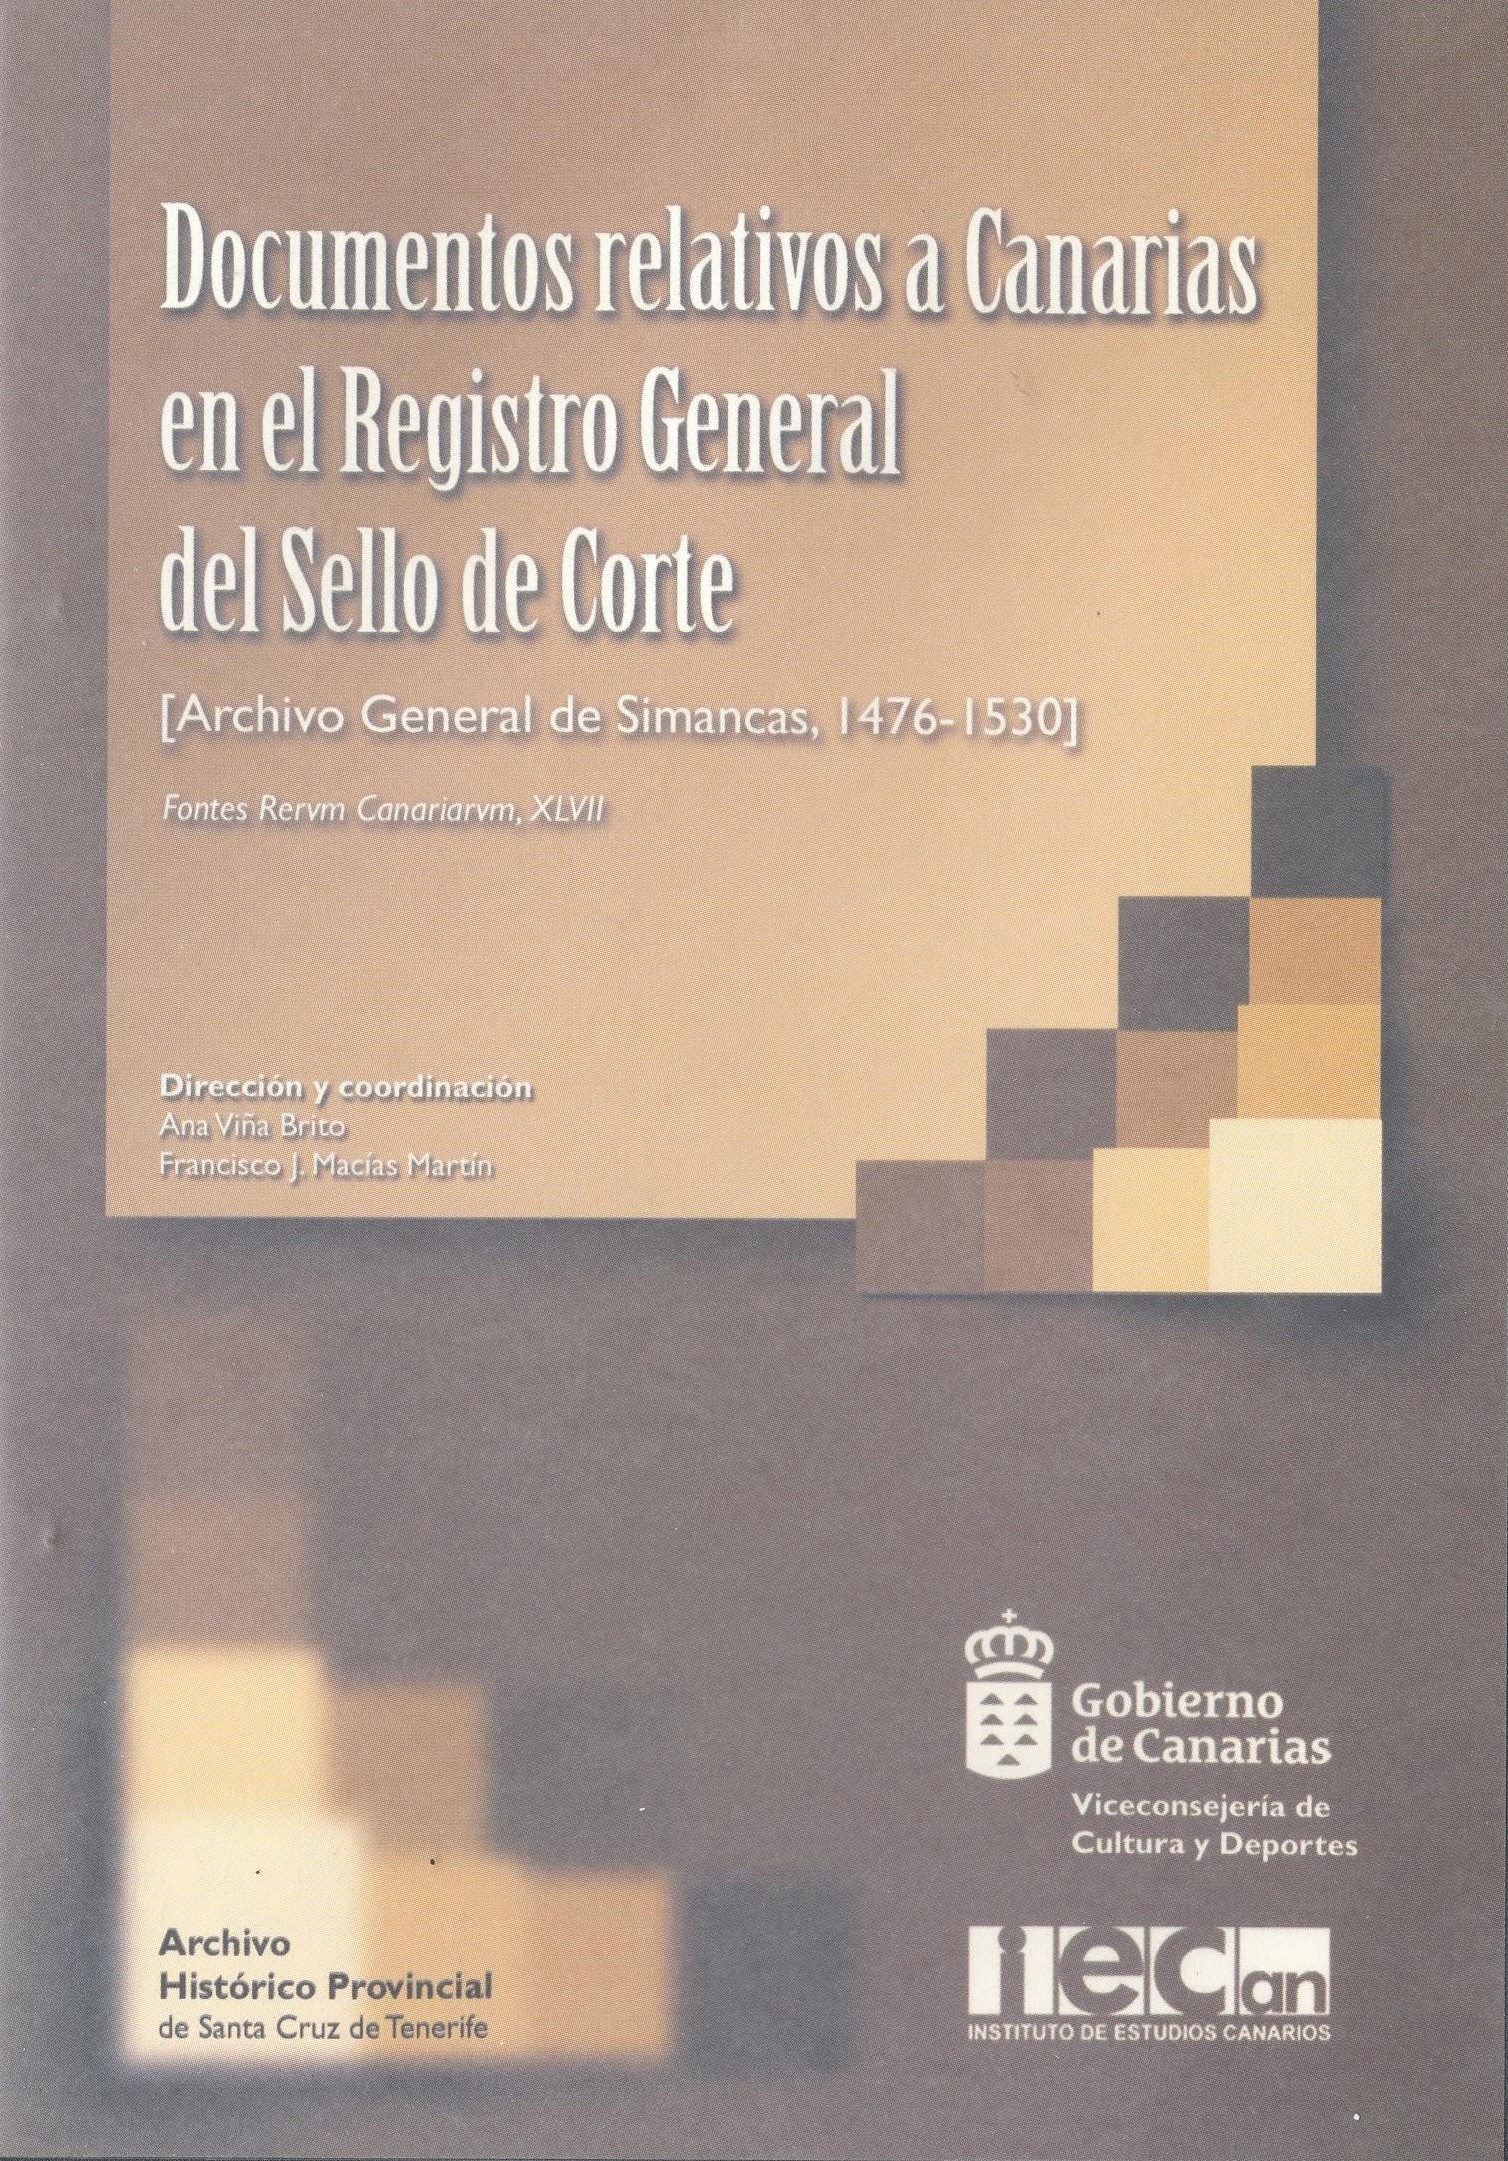 Imagen de portada del libro Documentos relativos a Canarias en el Registro General del Sello de Corte [Recurso electrónico]